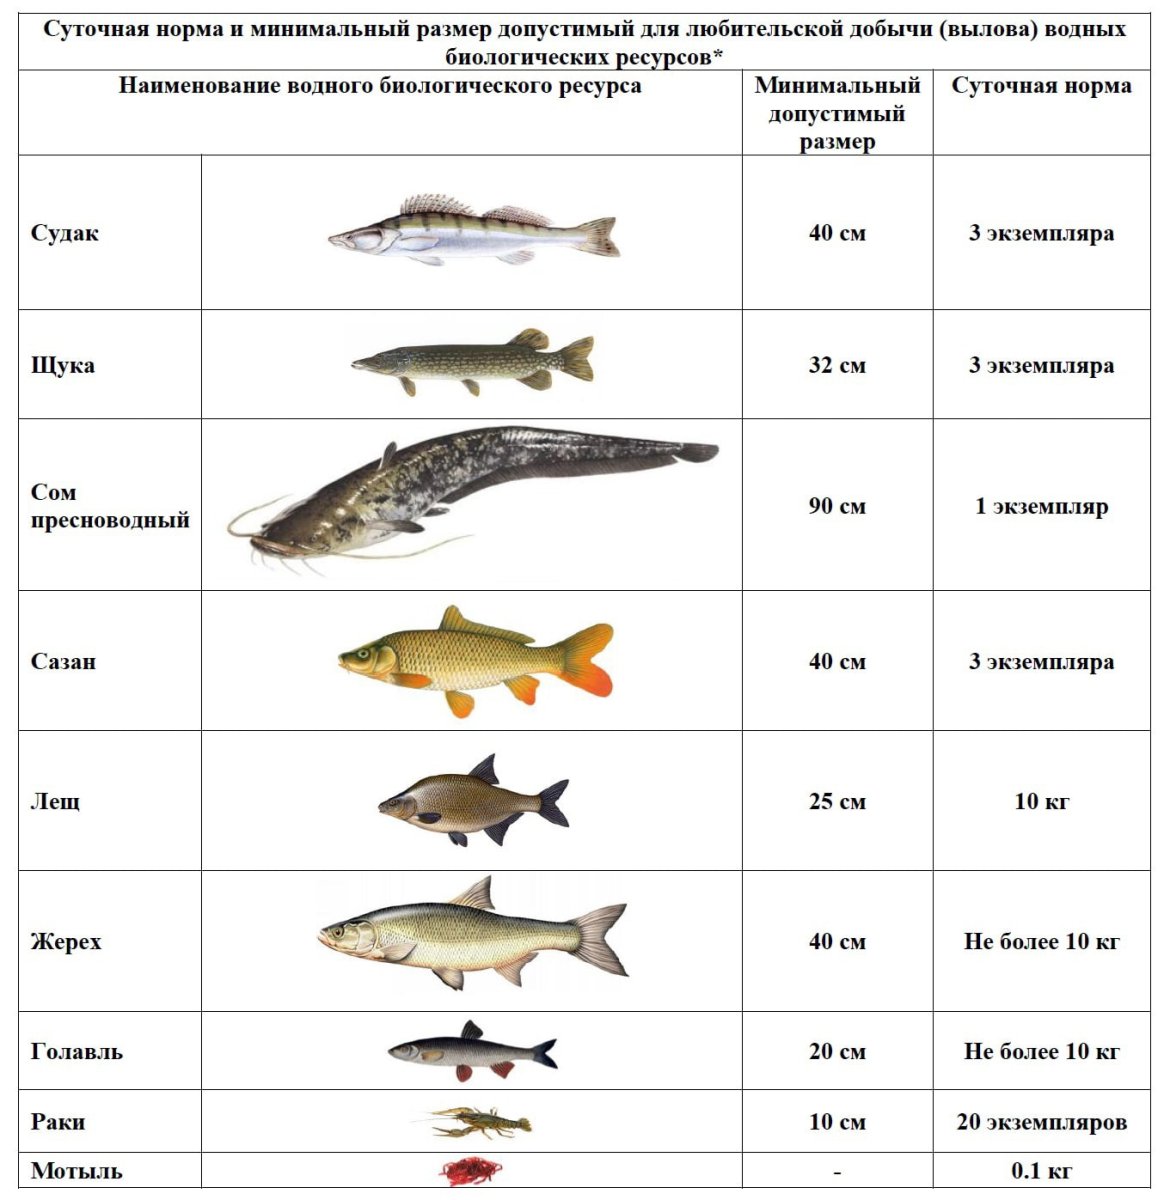 Допустимый улов. Разрешенный размер судака. Таблица размеров допустимый пойманной рыбы. Разрешённый размер рыбы для вылова в Московской области 2021. Размер судака разрешенный к вылову.